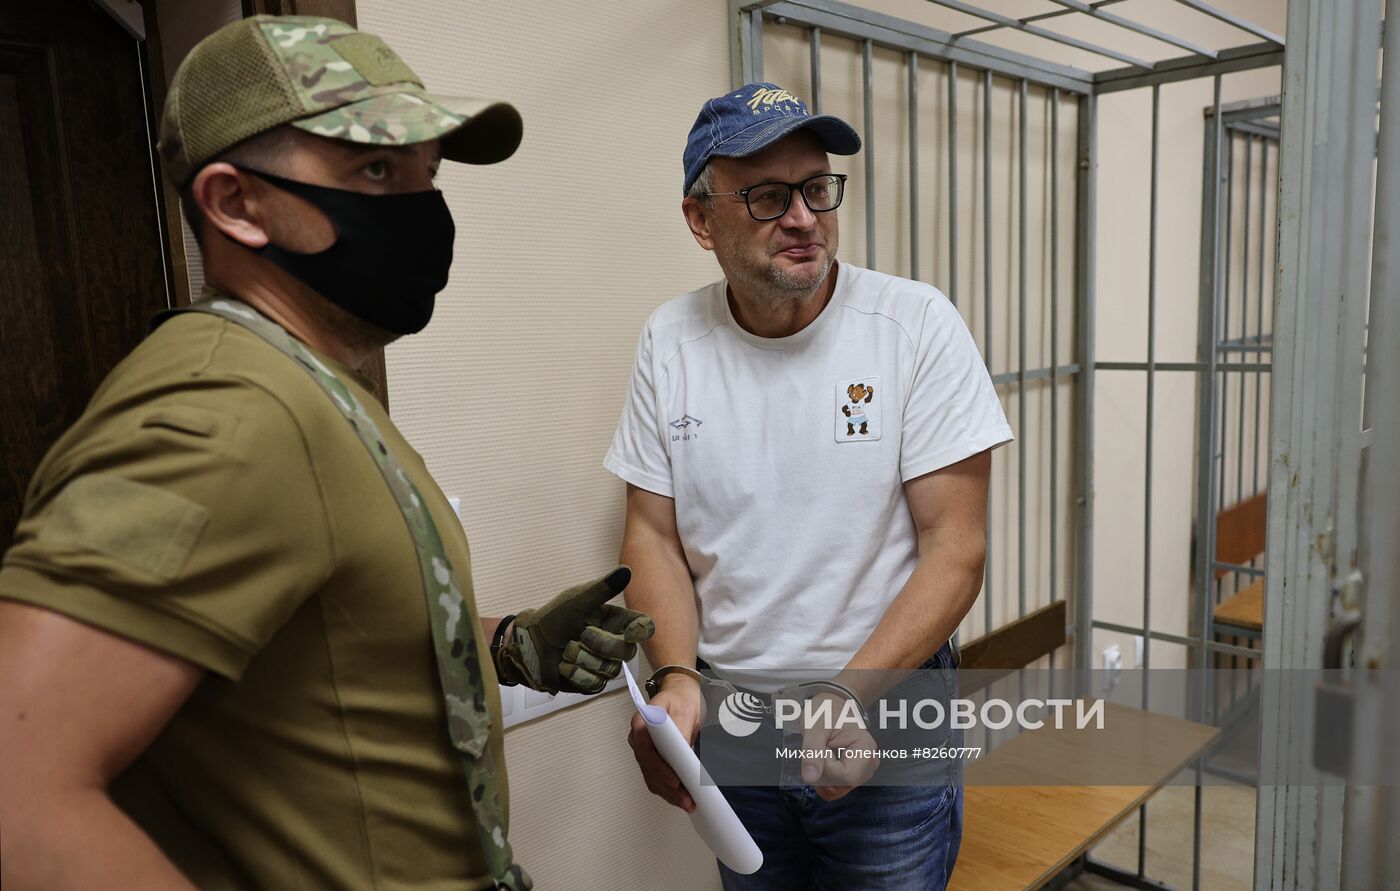 Арест подозреваемого в подготовке терактов в Калининграде